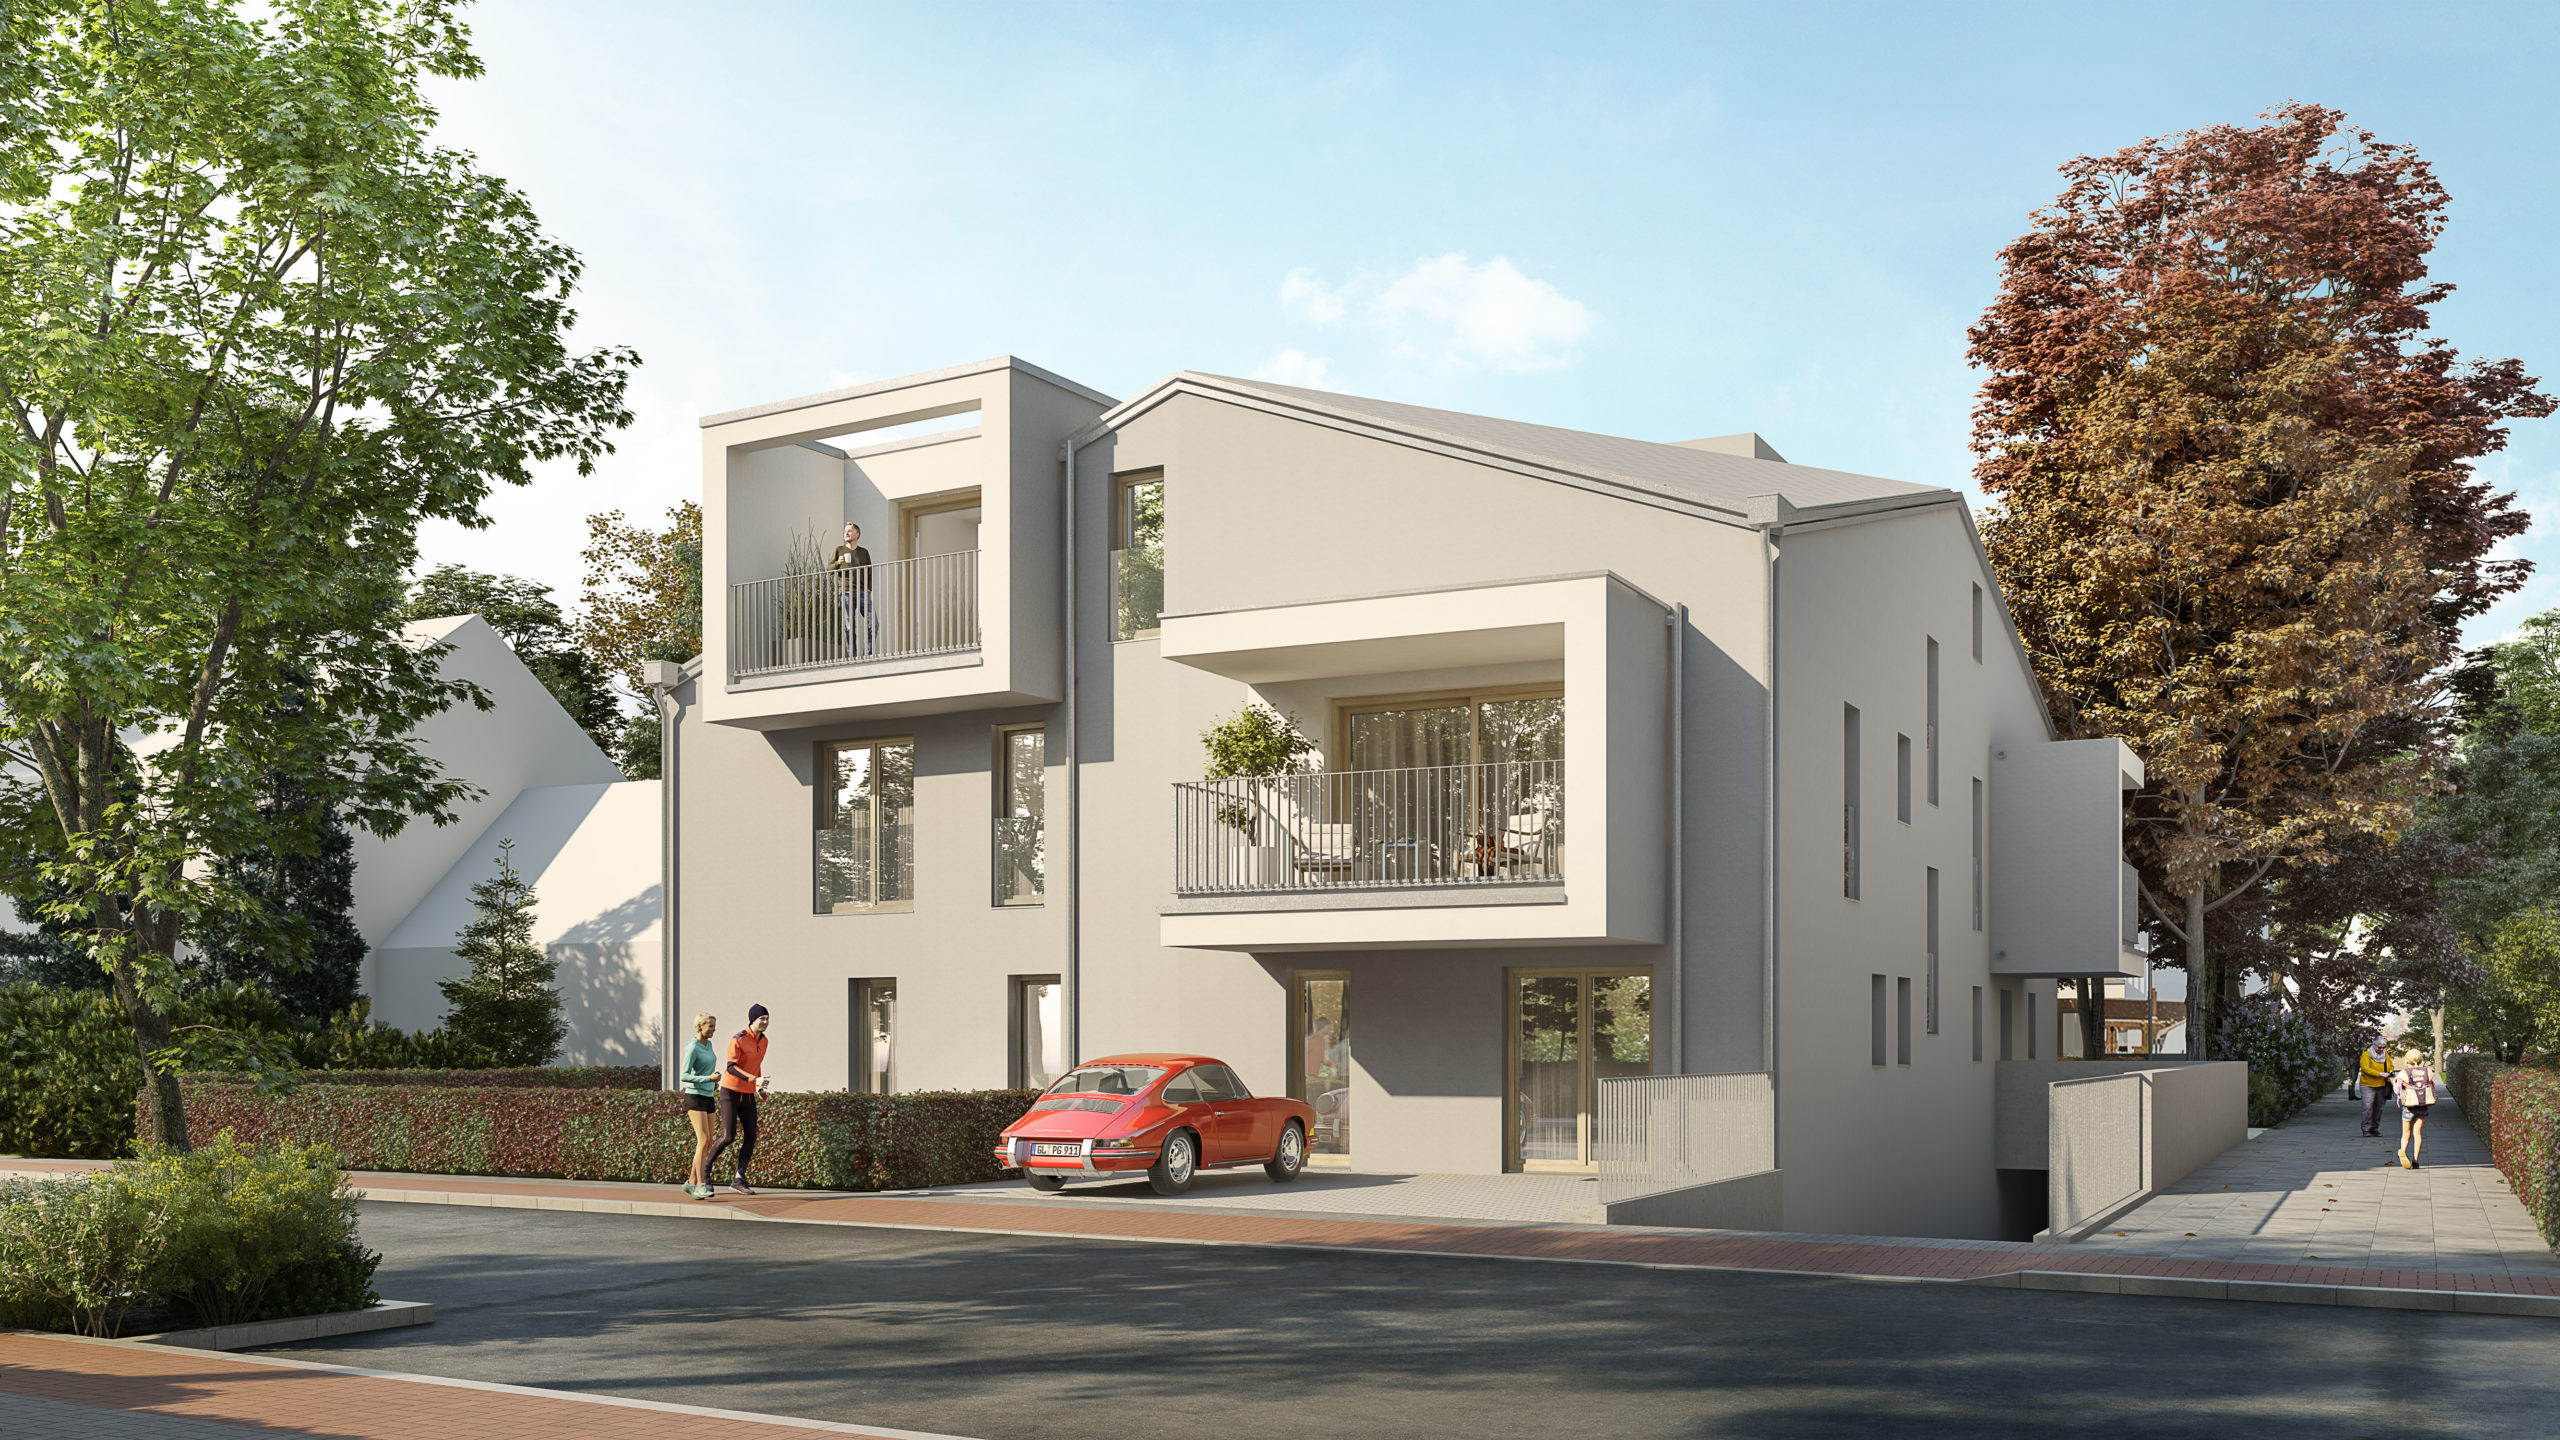 Planung Rendering eines Mehrfamilienhauses moderne Architektur mit rotem Porsche